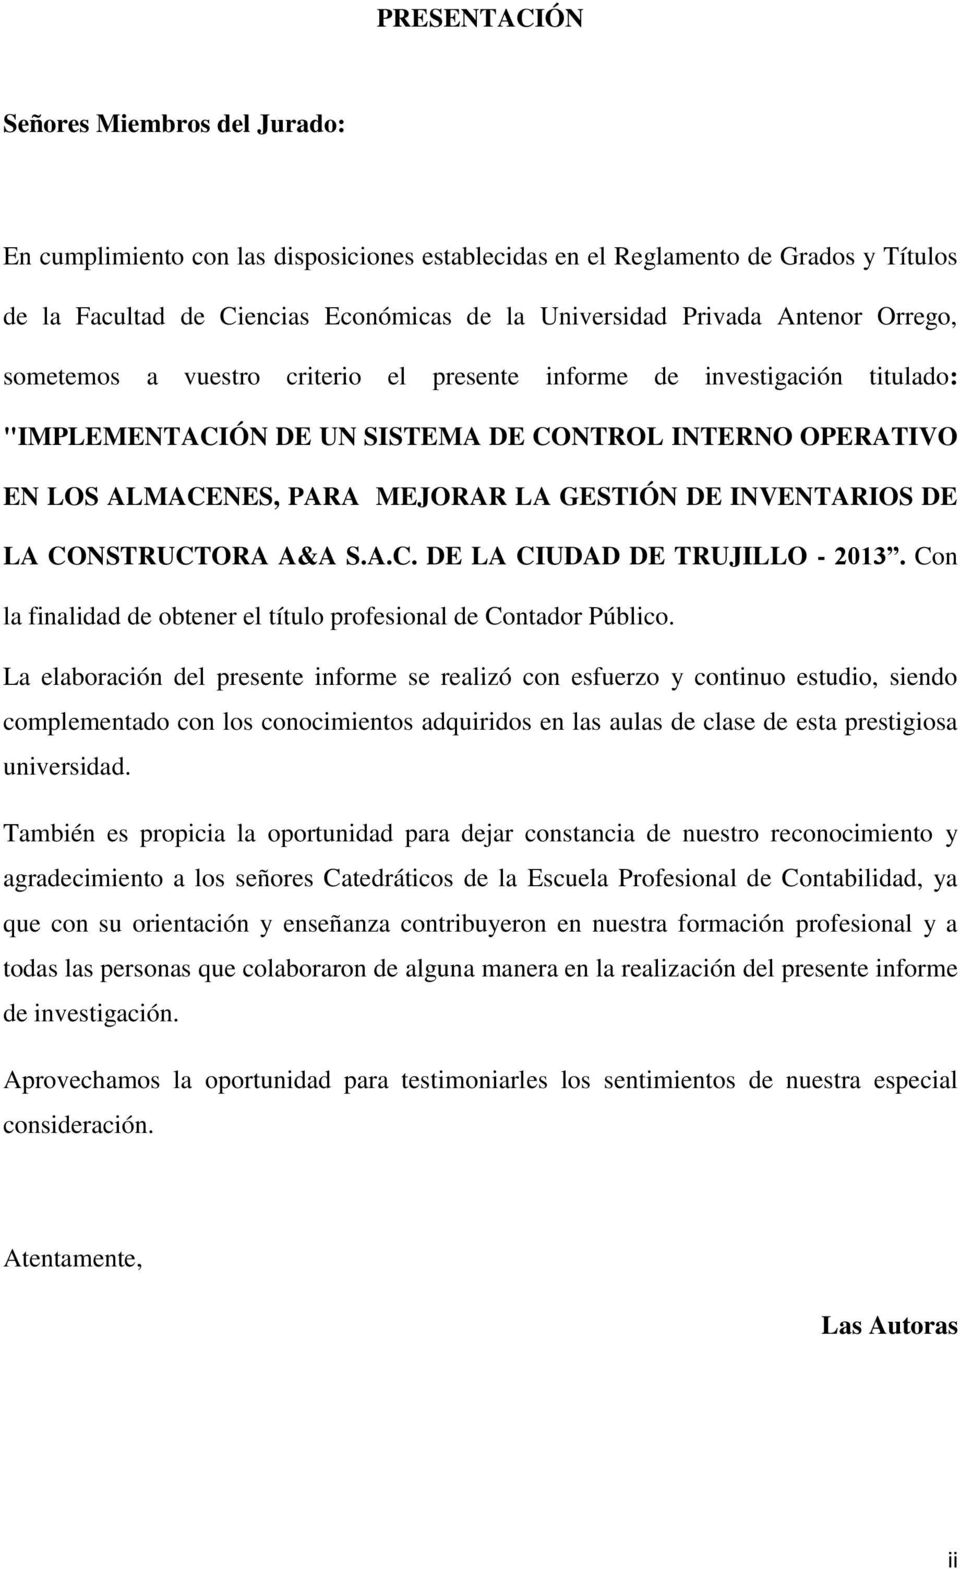 INVENTARIOS DE LA CONSTRUCTORA A&A S.A.C. DE LA CIUDAD DE TRUJILLO - 2013. Con la finalidad de obtener el título profesional de Contador Público.